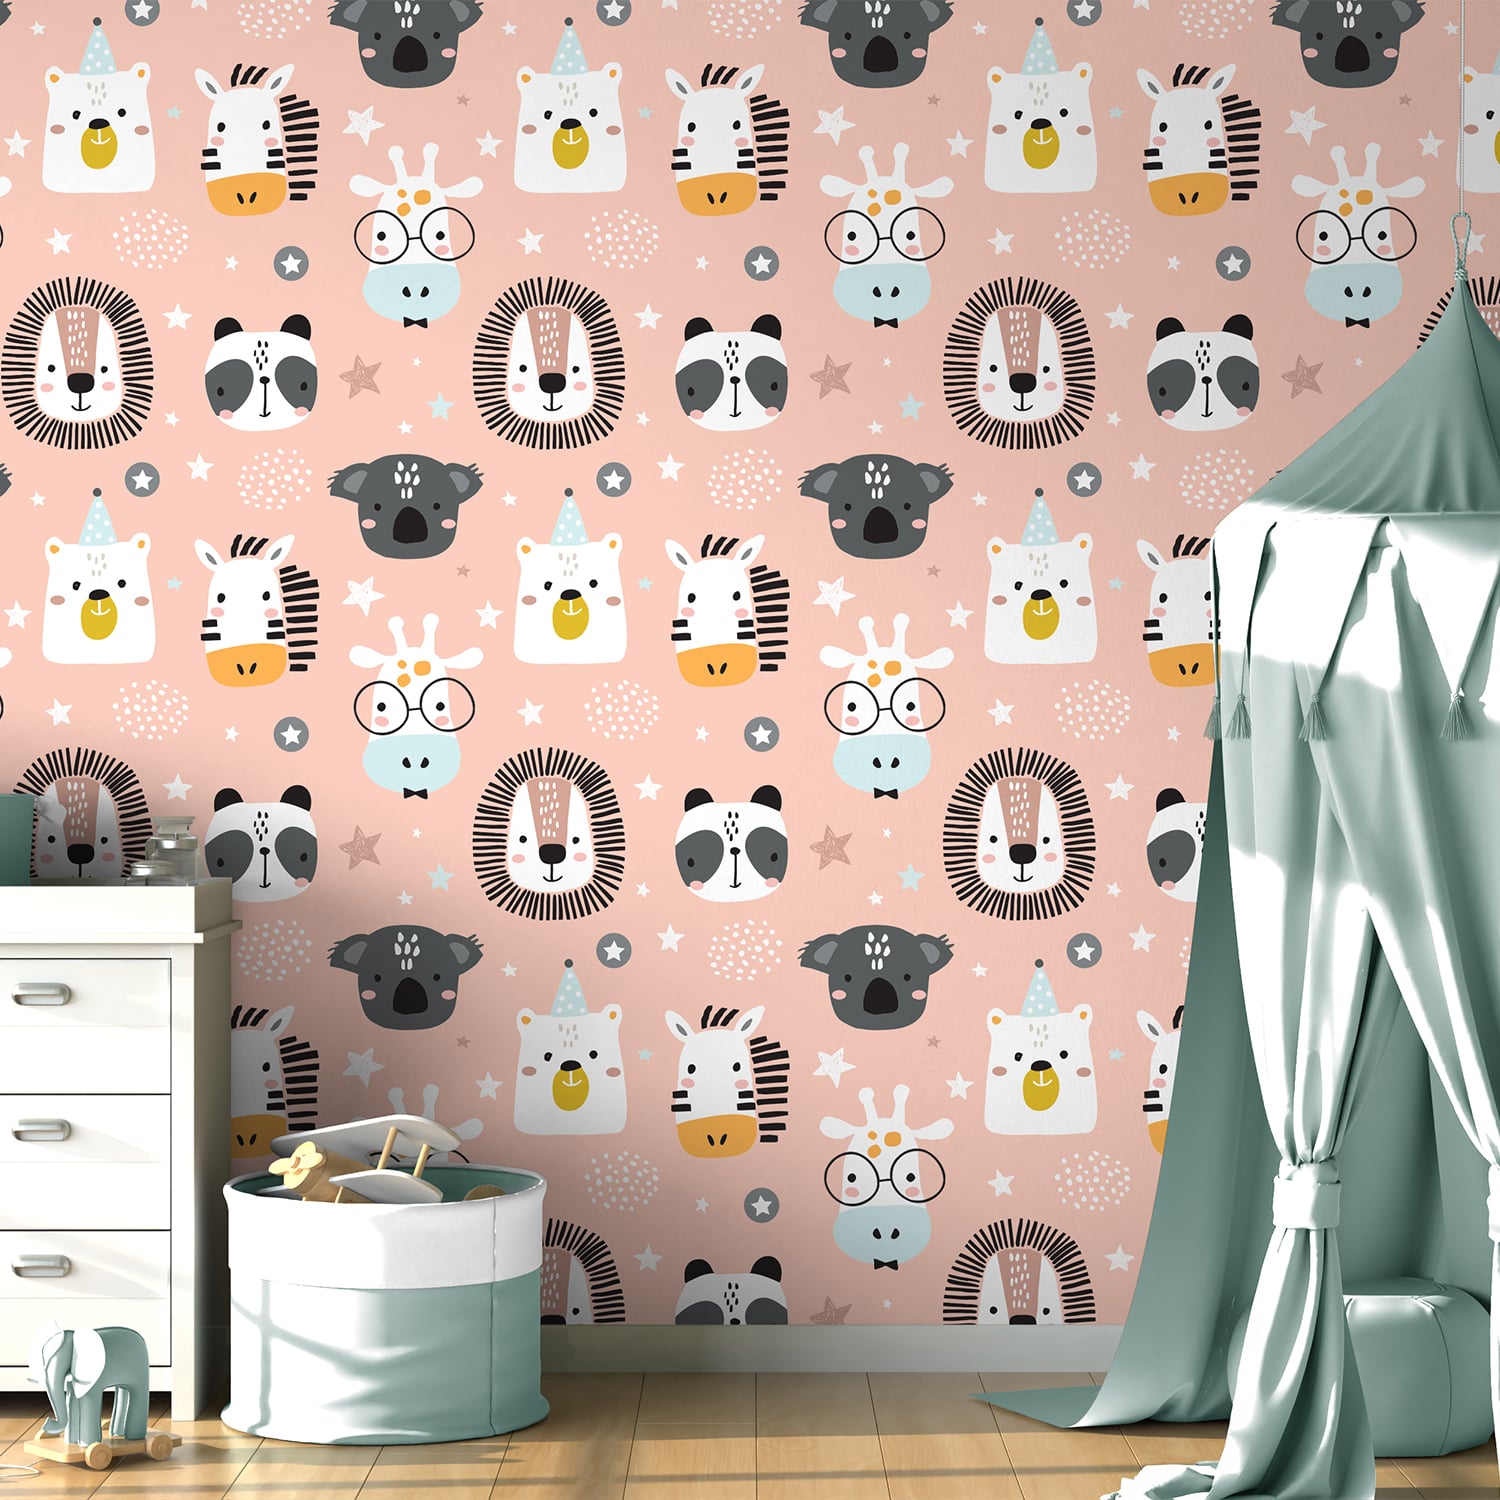 PP72-mur-papier-peint-adhesif-decoratif-revetement-vinyle-motifs-tete-animaux-renovation-meuble-mur-min